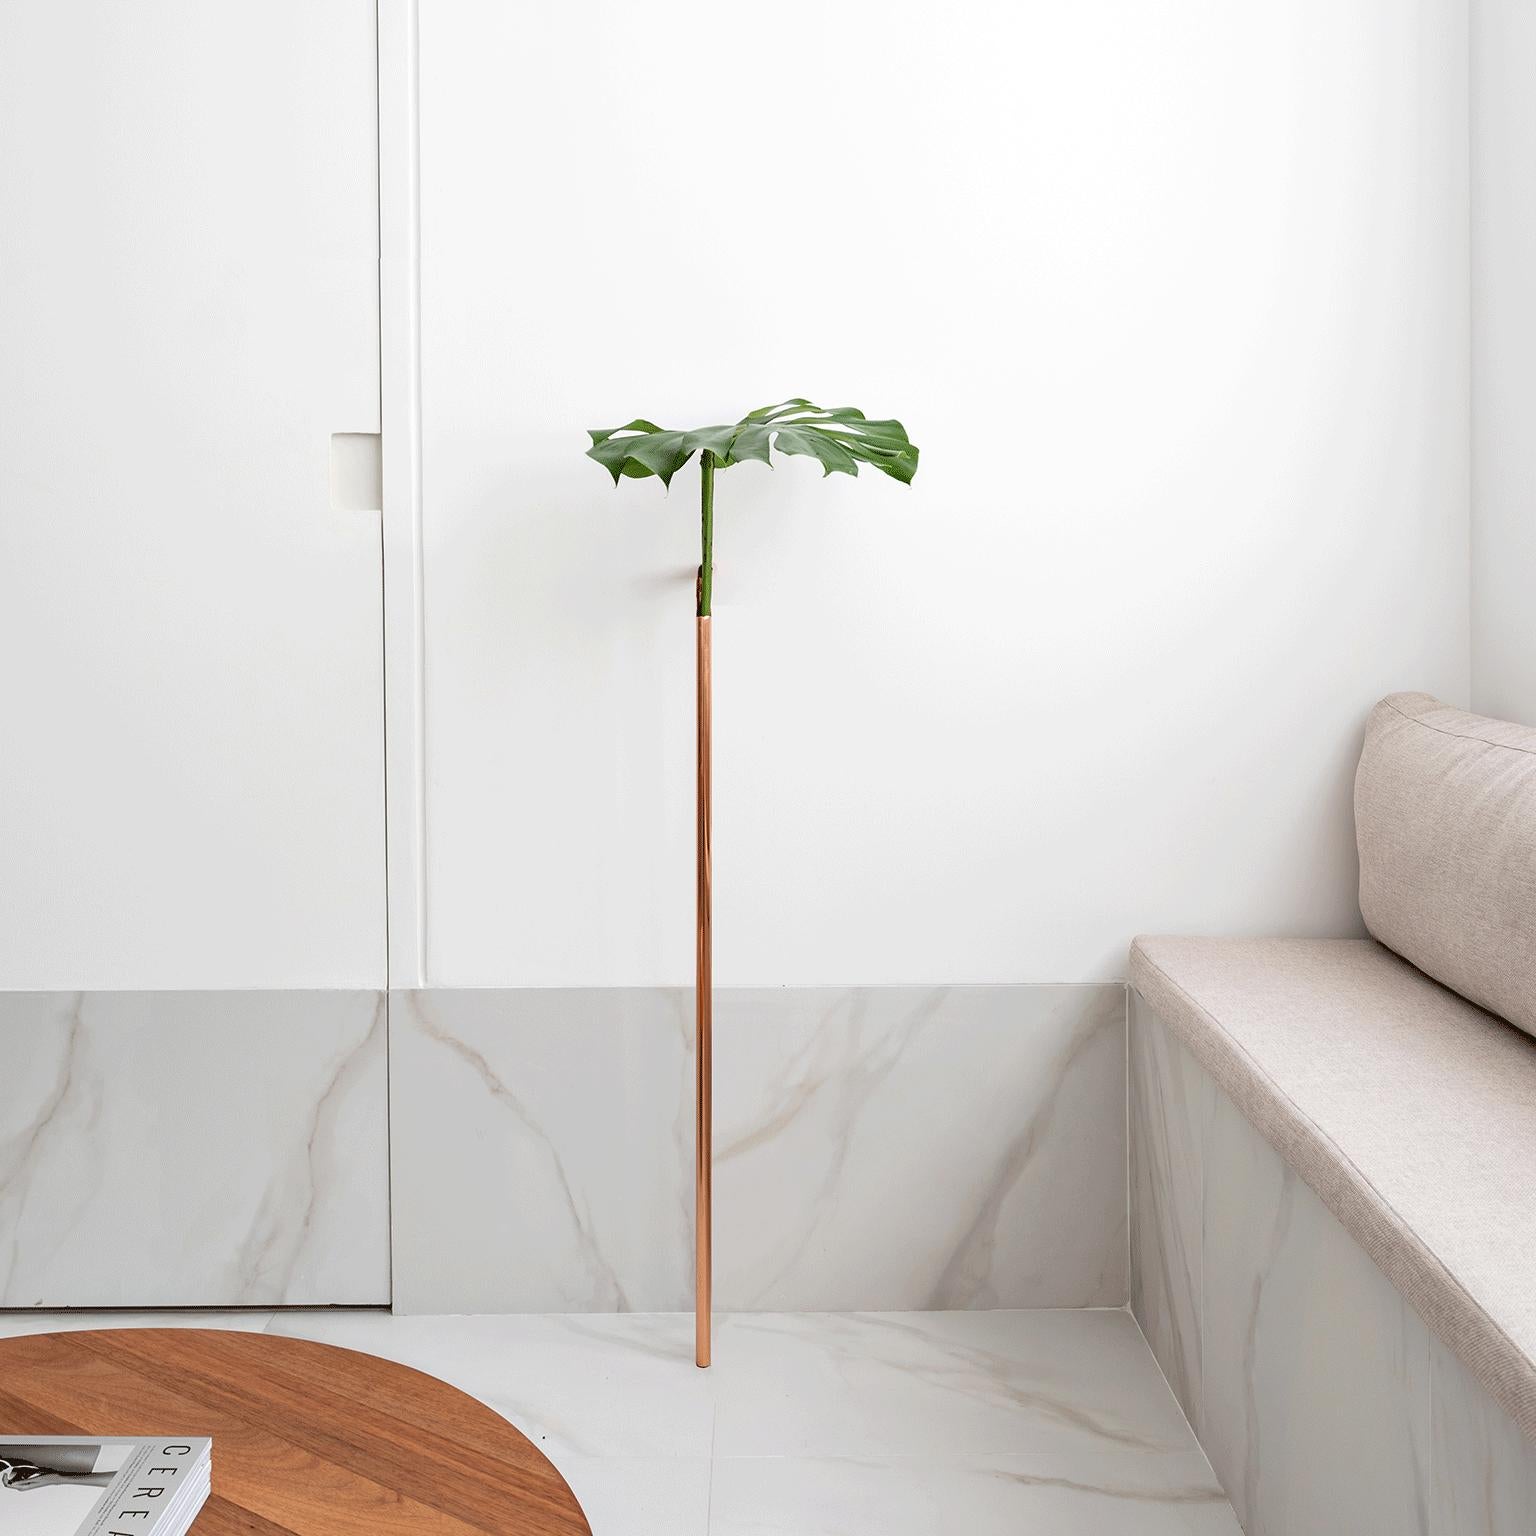 Minimalist Solo Vase in Copper by Wentz, Brazilian Contemporary Design For Sale